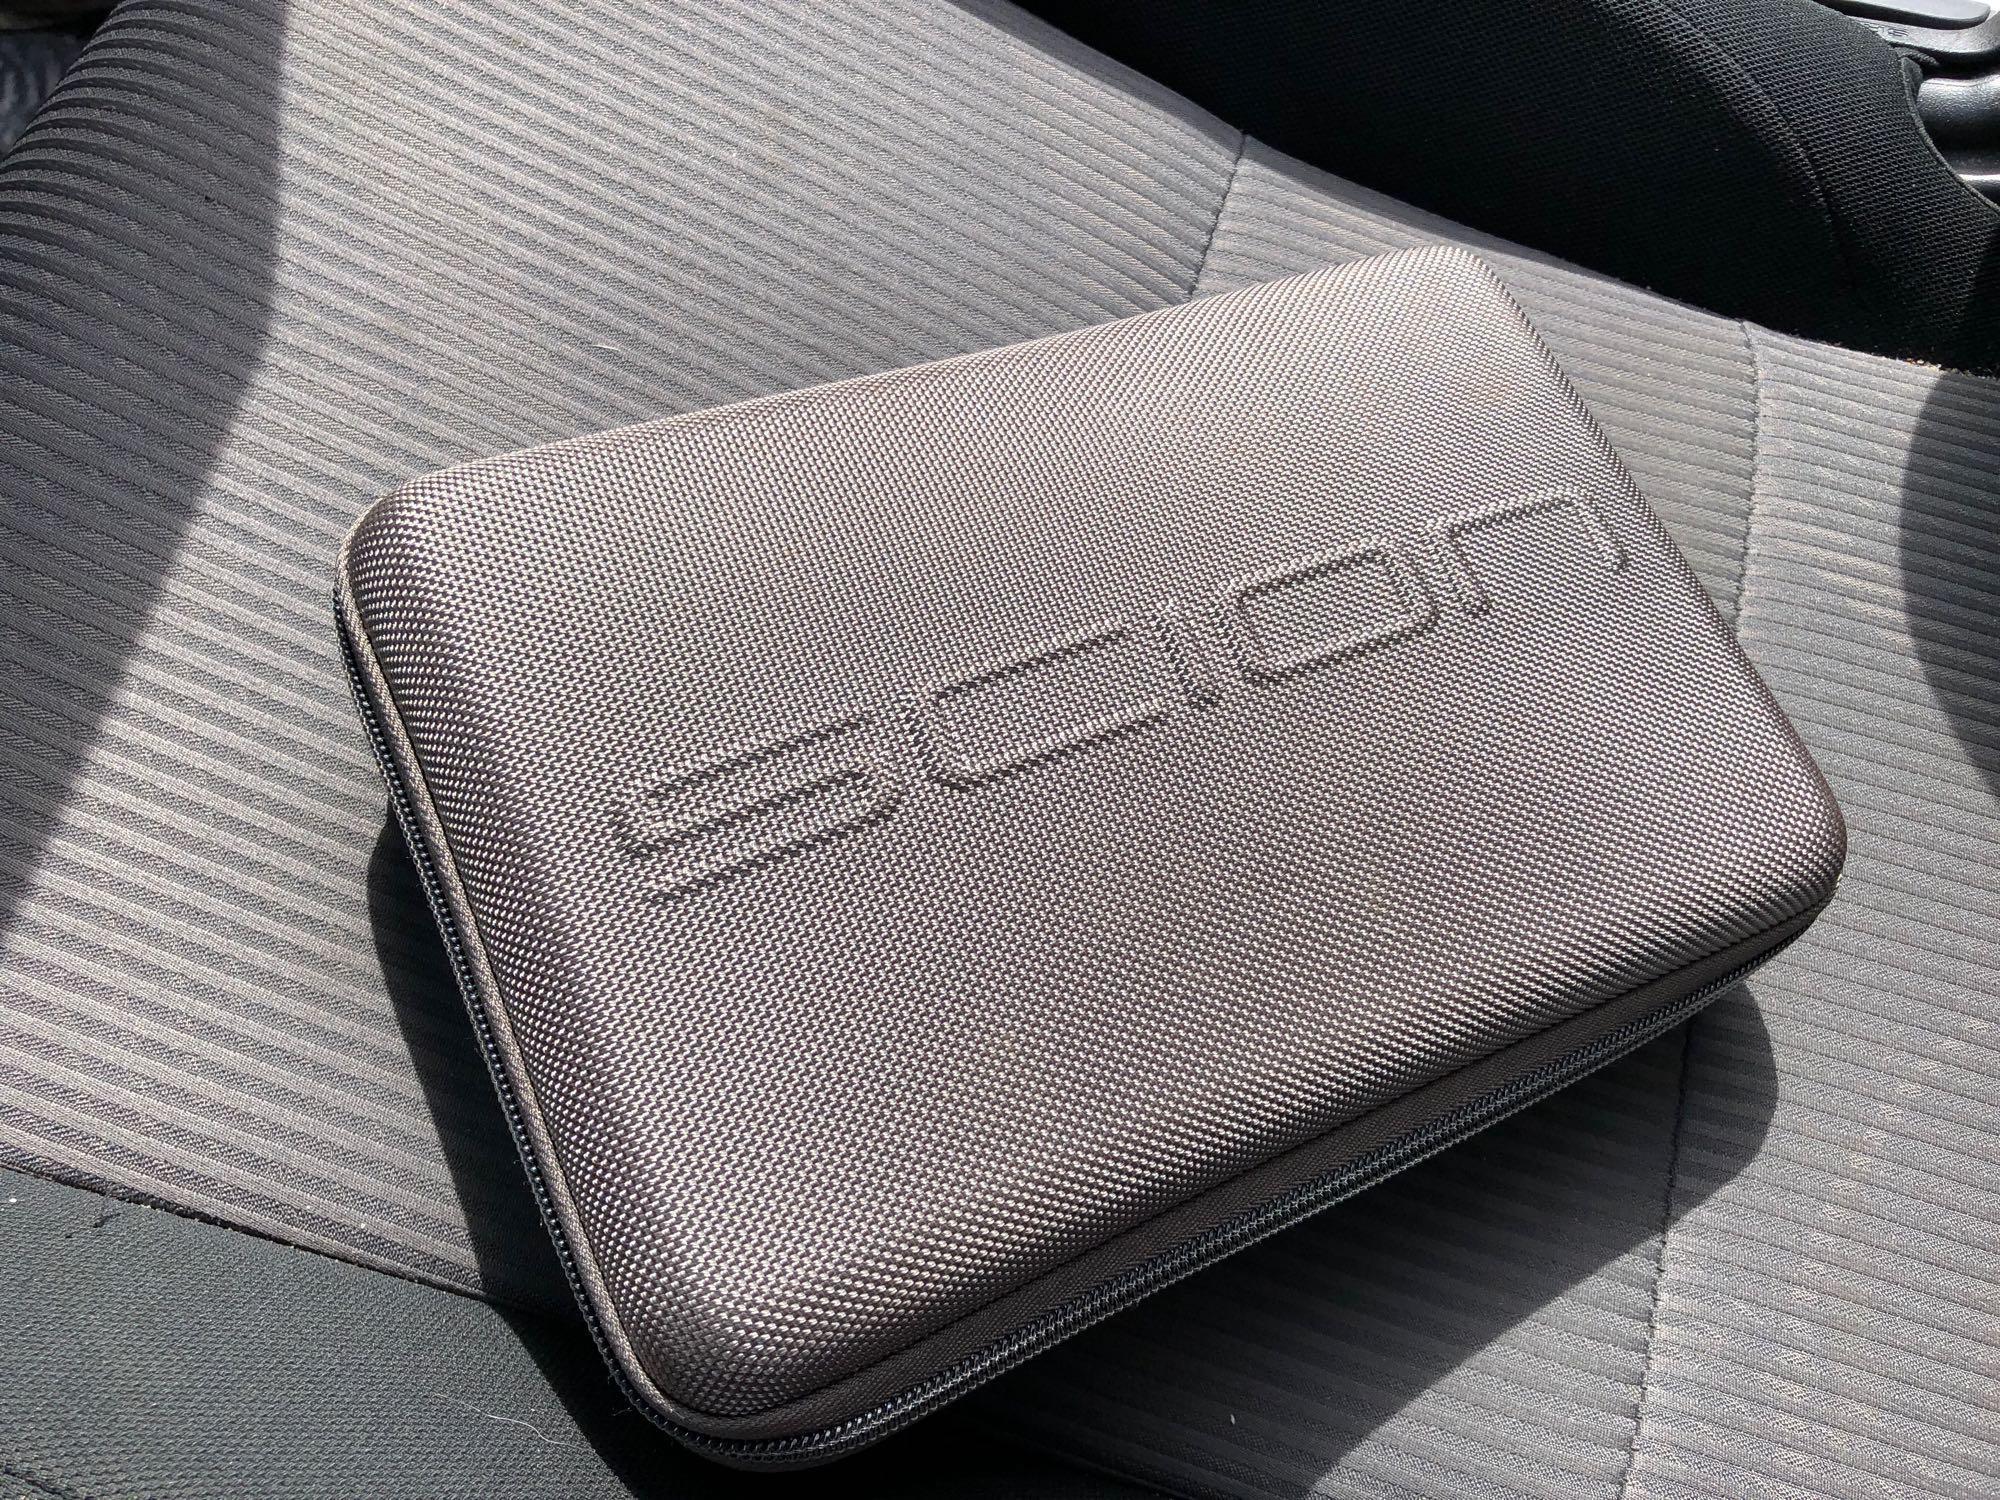 2015 Toyota Scion TC